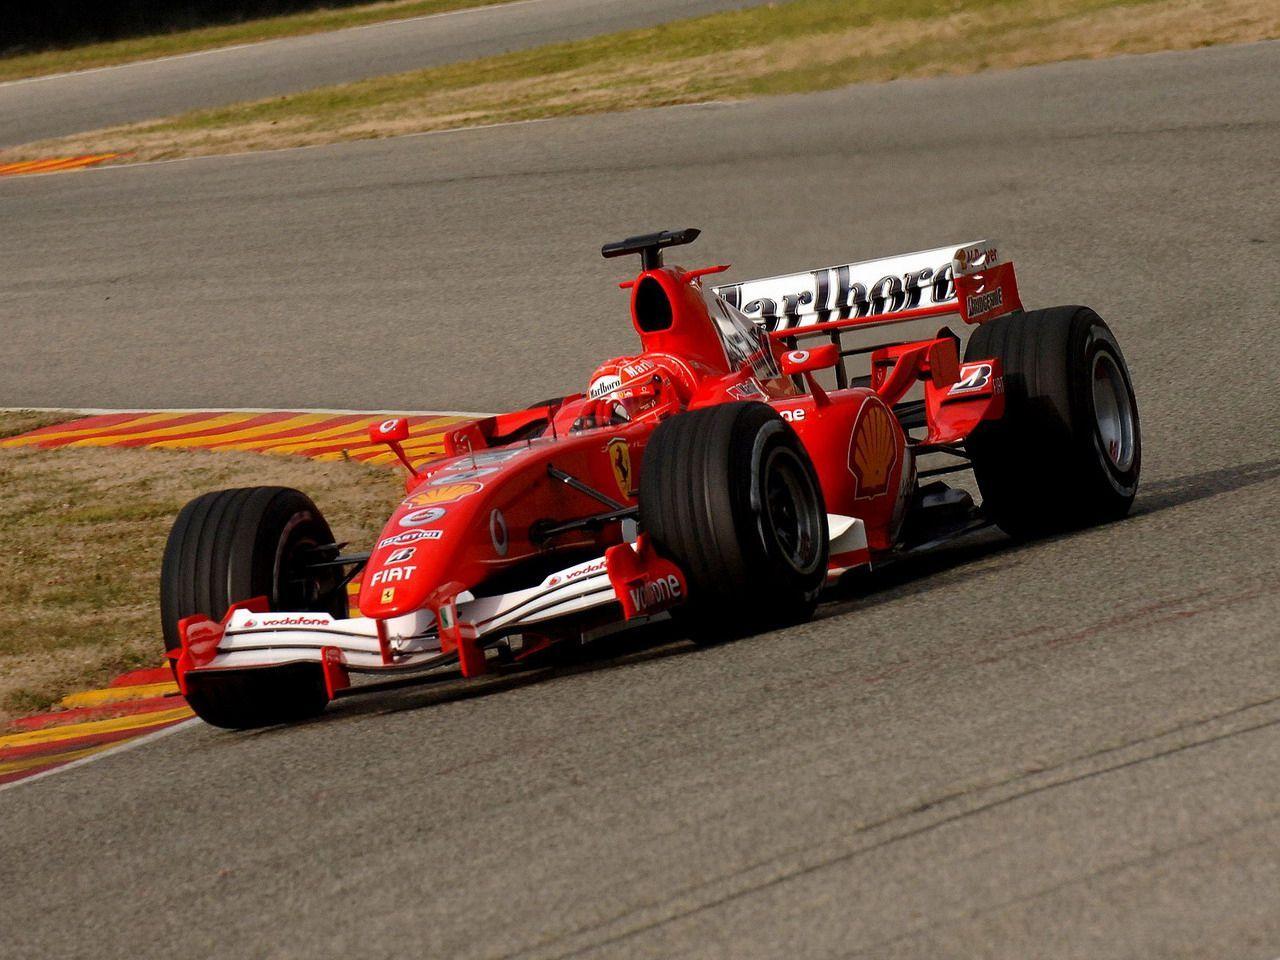 2006 Ferrari 248 F1